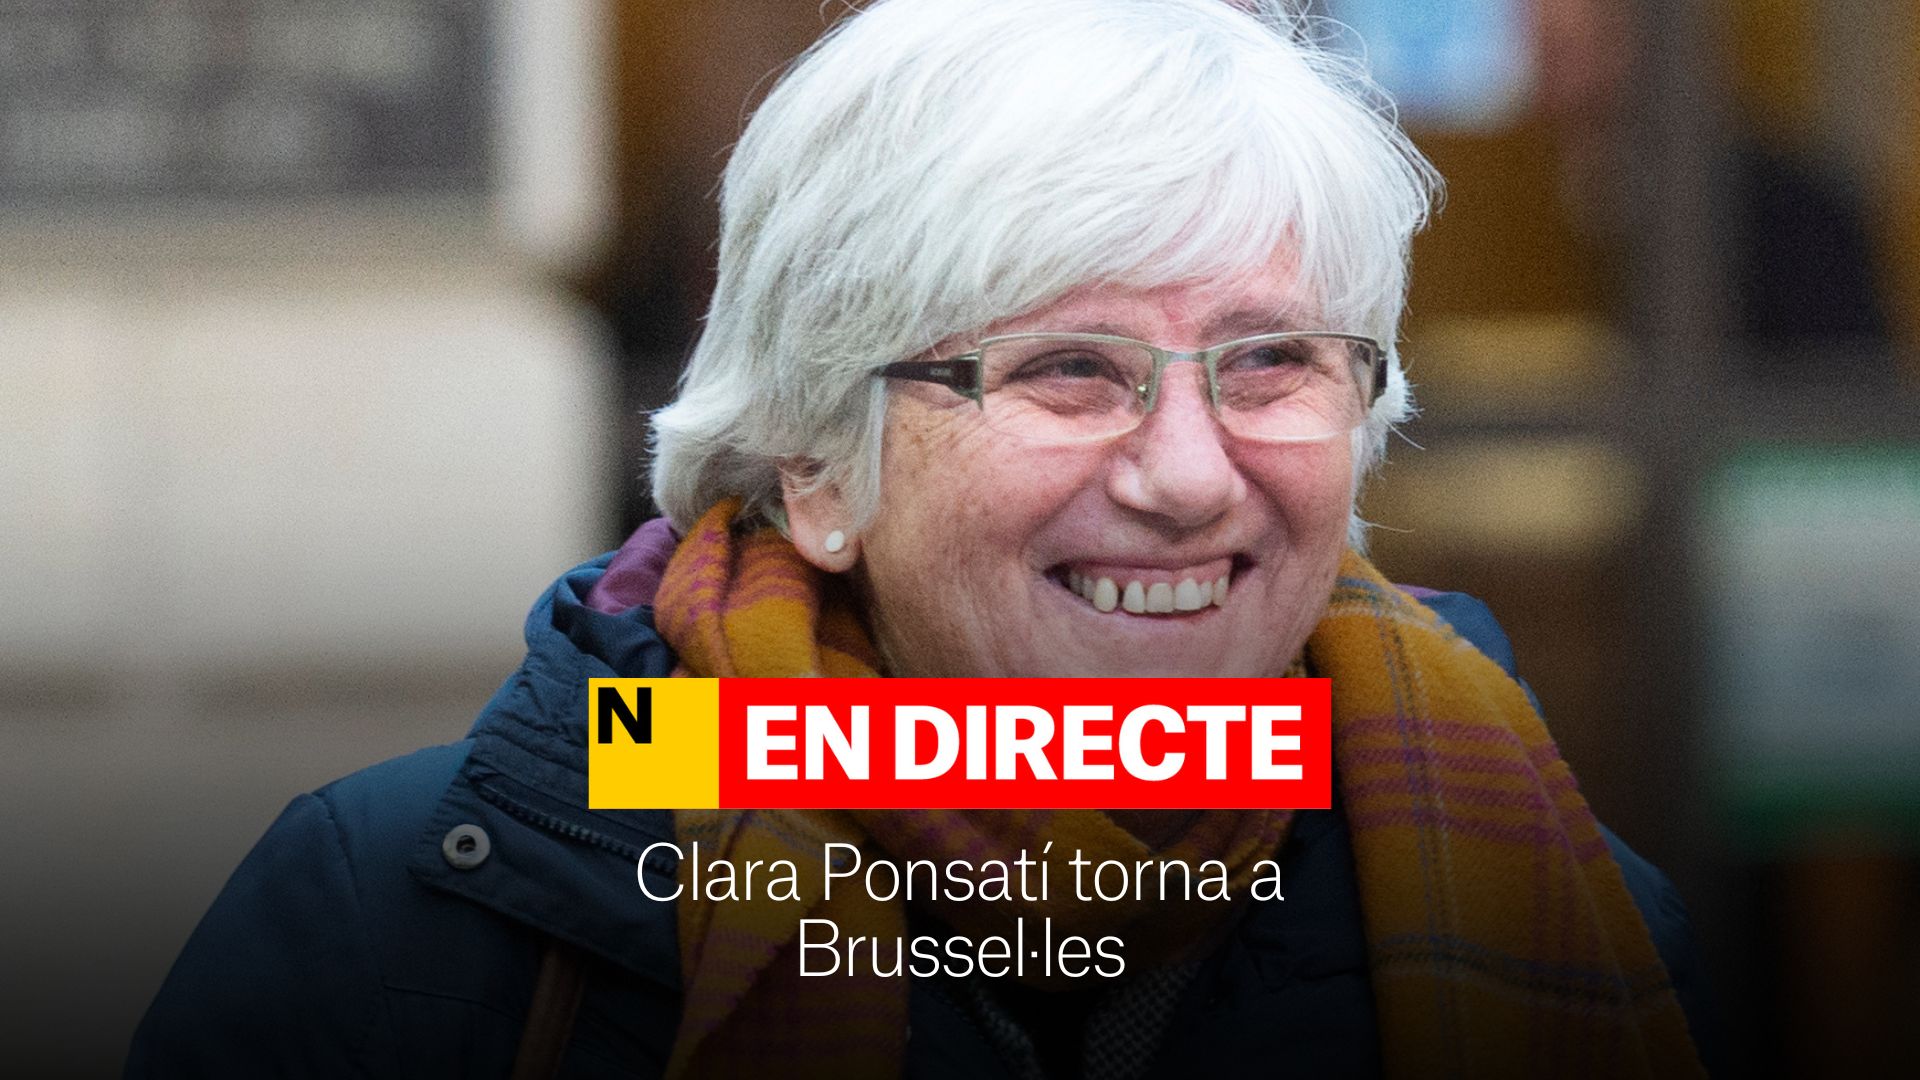 Clara Ponsatí vuelve a Bruselas después de la detención en Barcelona, DIRECTO